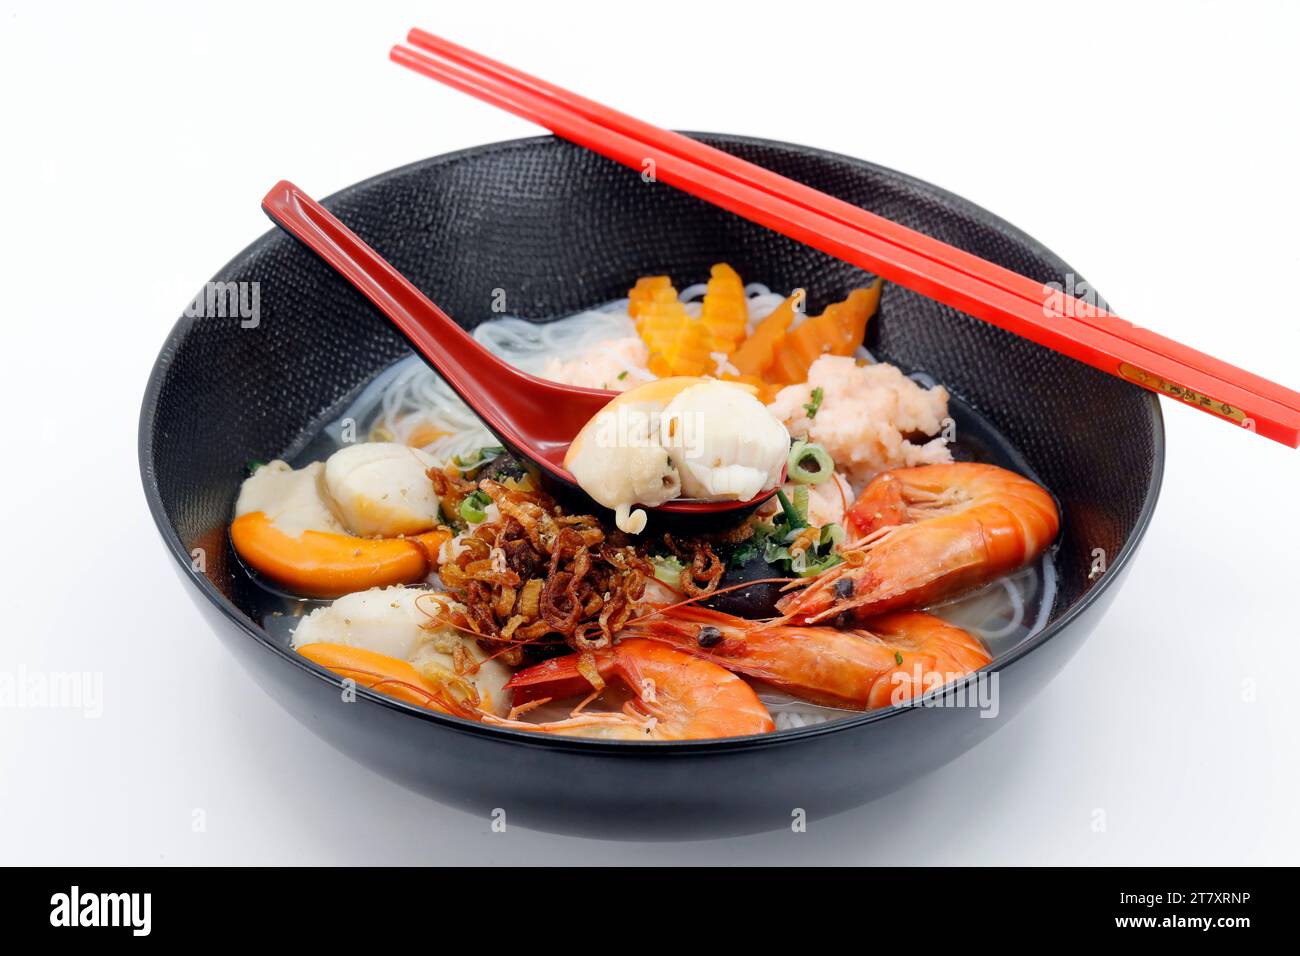 Pesce fresco, zuppa vietnamita servita in una ciotola nera, cucina asiatica, Francia, Europa Foto Stock